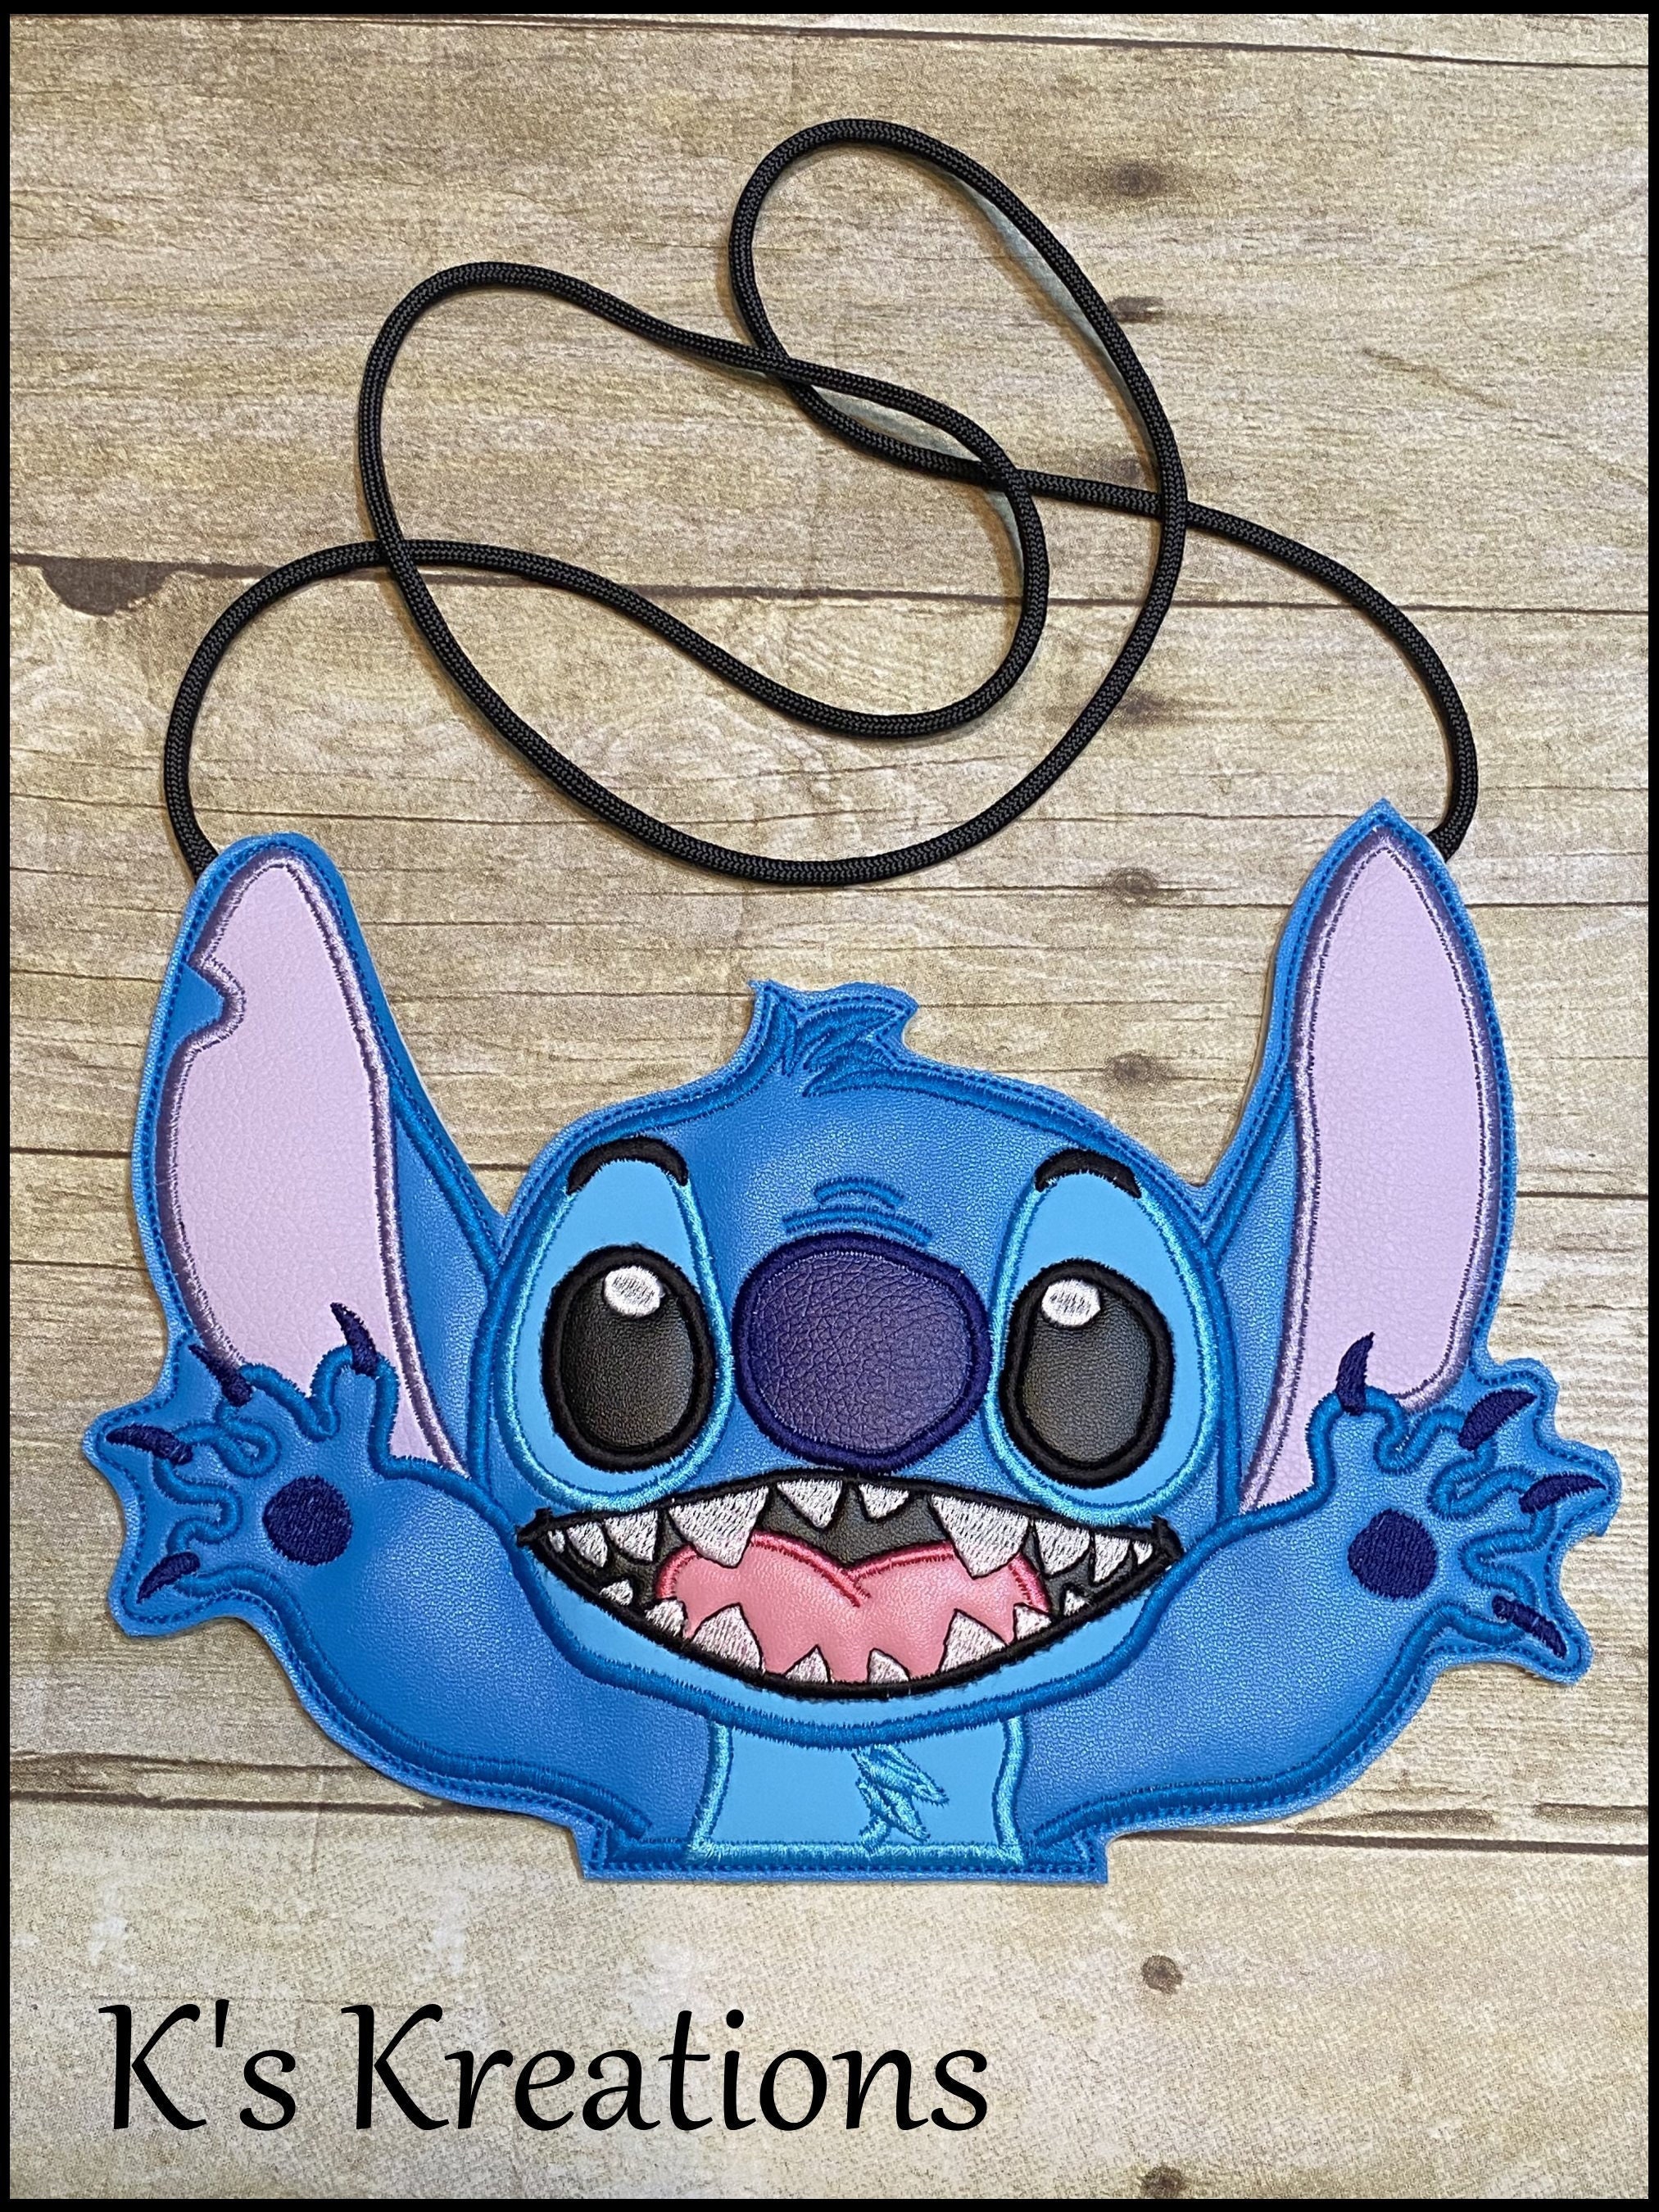 Disney Store Stitch Crossbody Bag, Lilo & Stitch